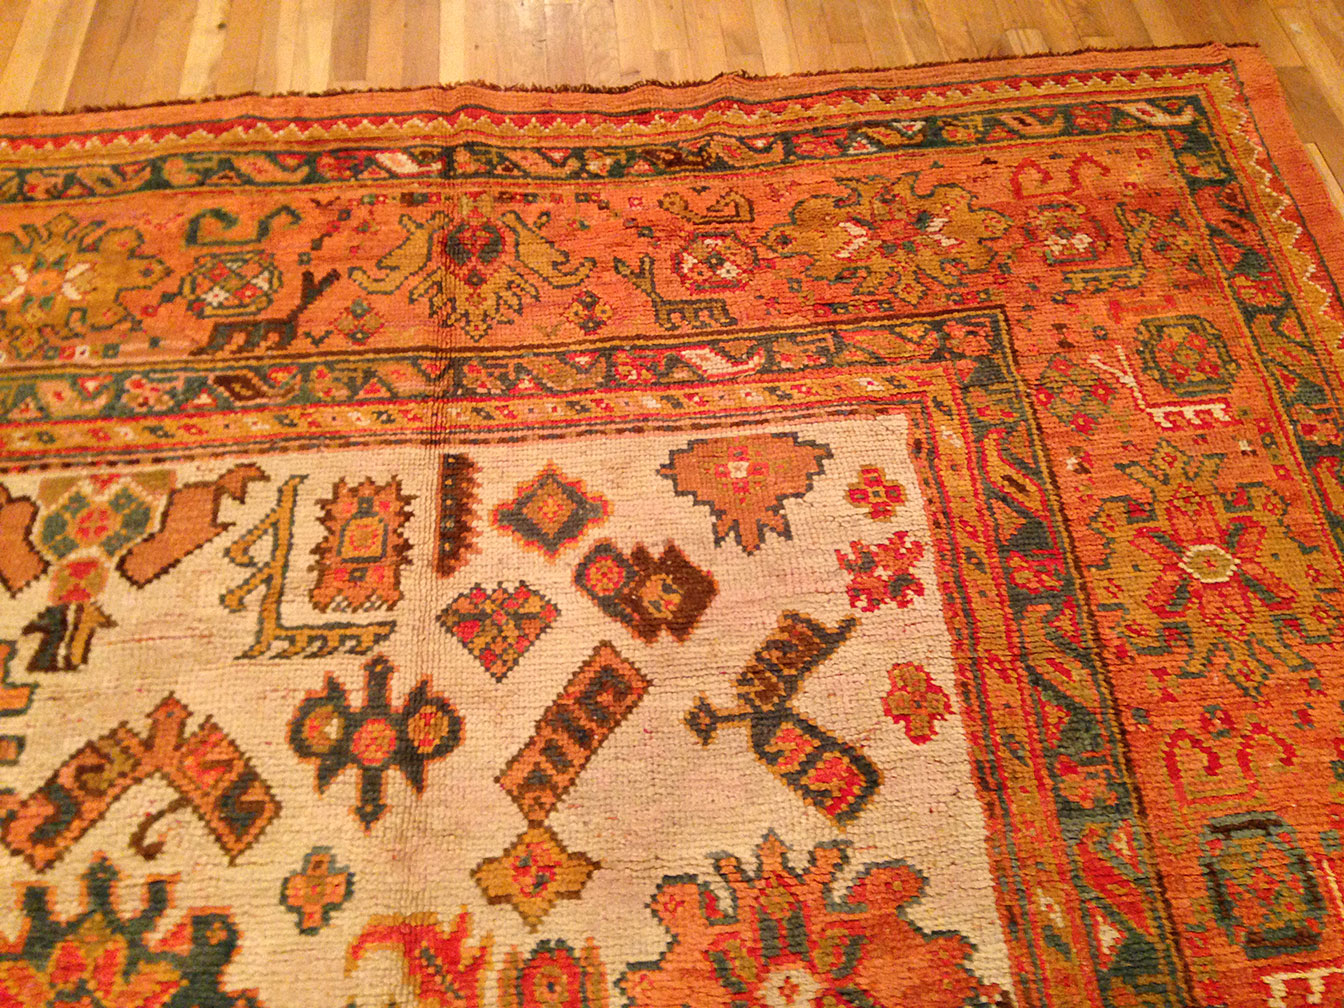 Antique oushak Carpet - # 9644